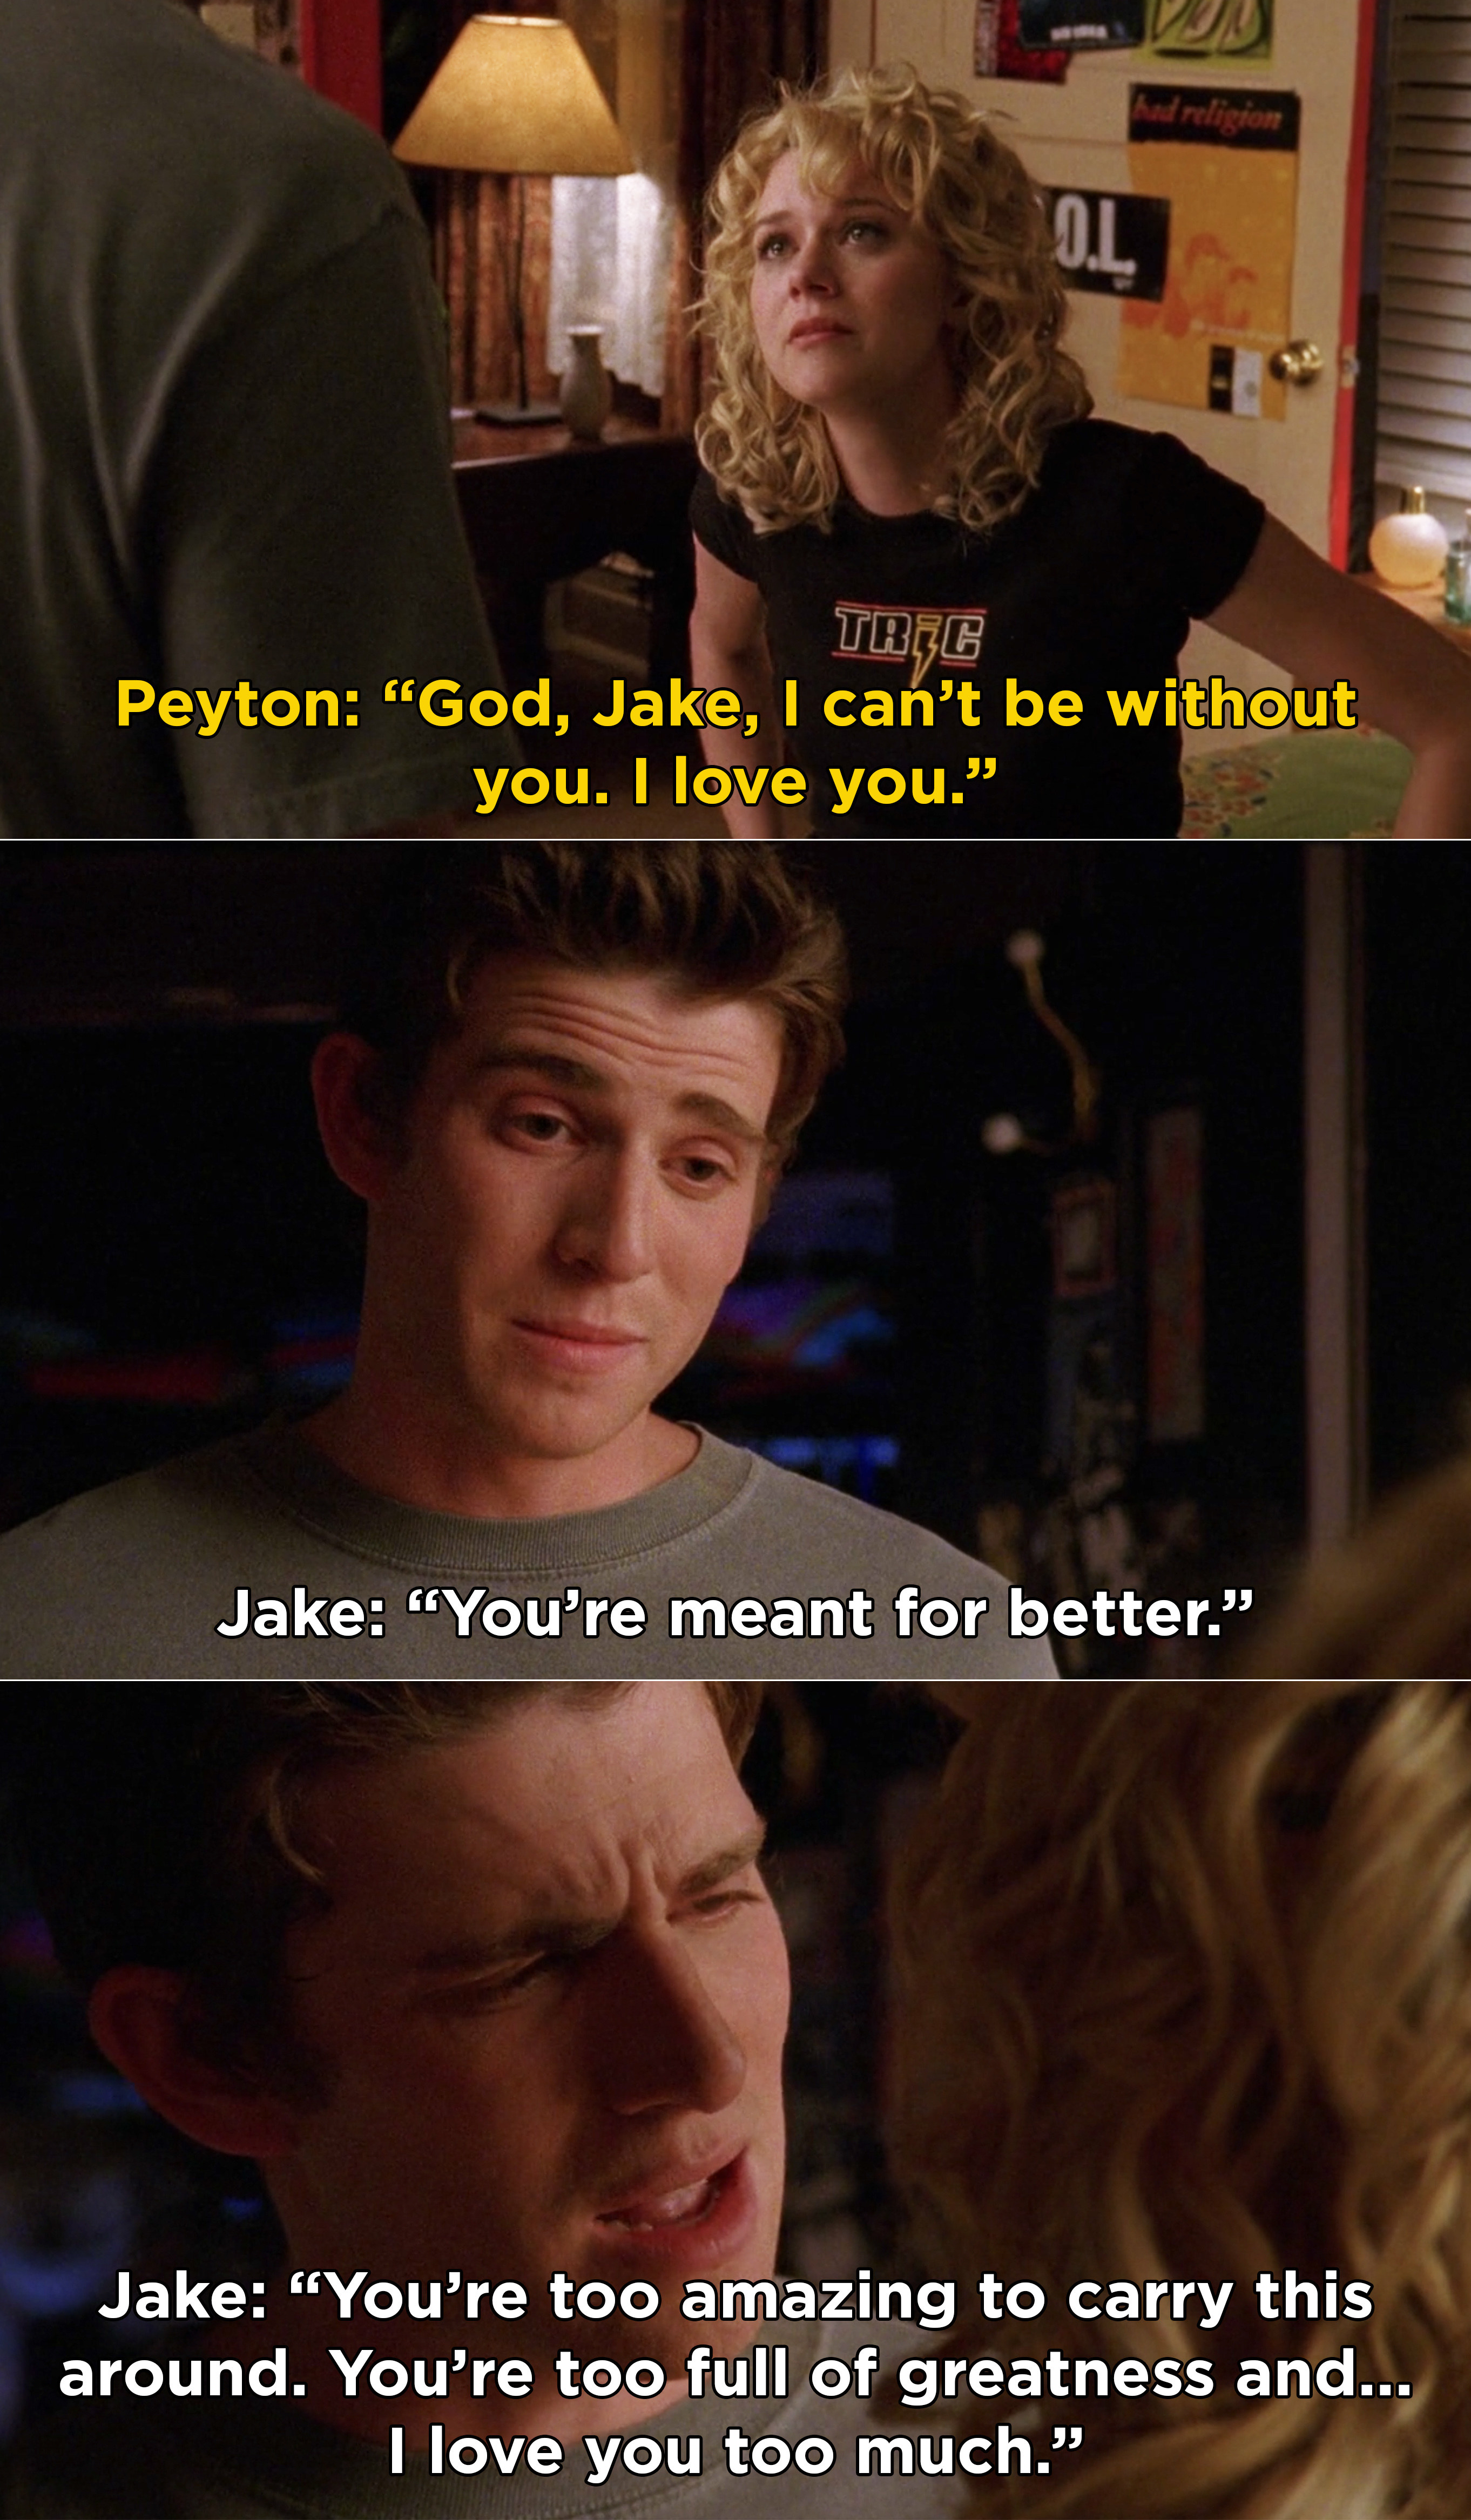 佩顿告诉杰克她爱他,停下来# x27; t没有他的生活,和杰克说她是更好的,“greatness"的内容太多;